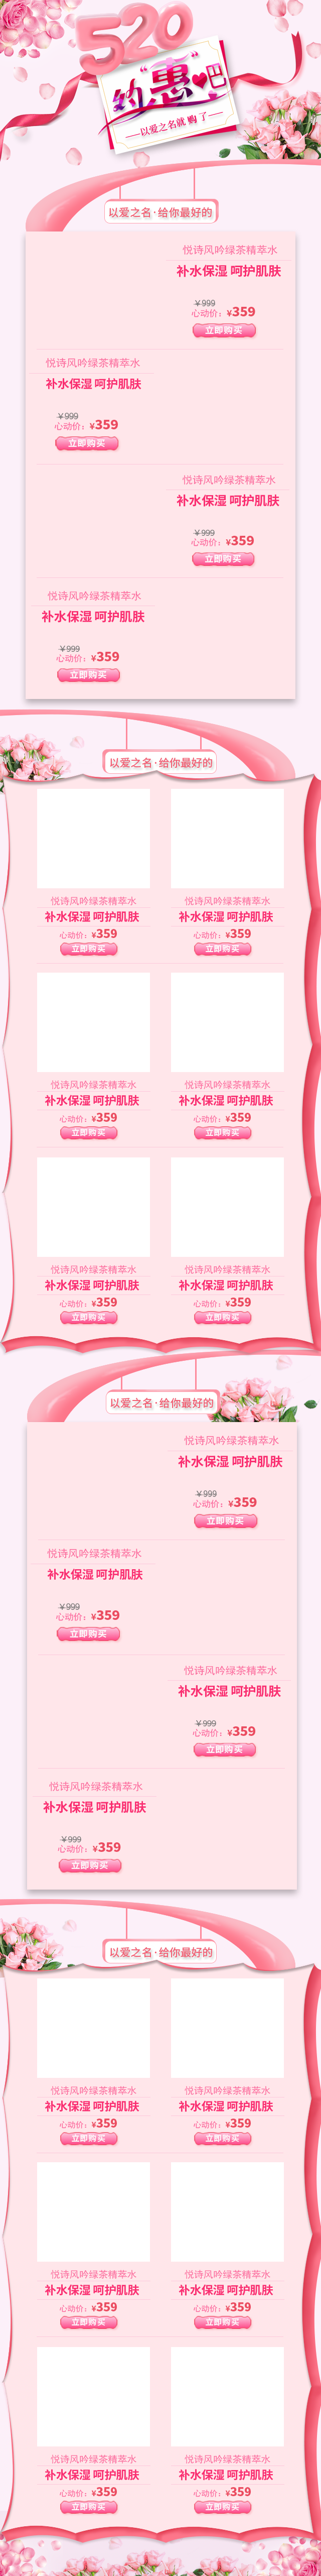 粉色浪漫风格520活动专题页psd模板